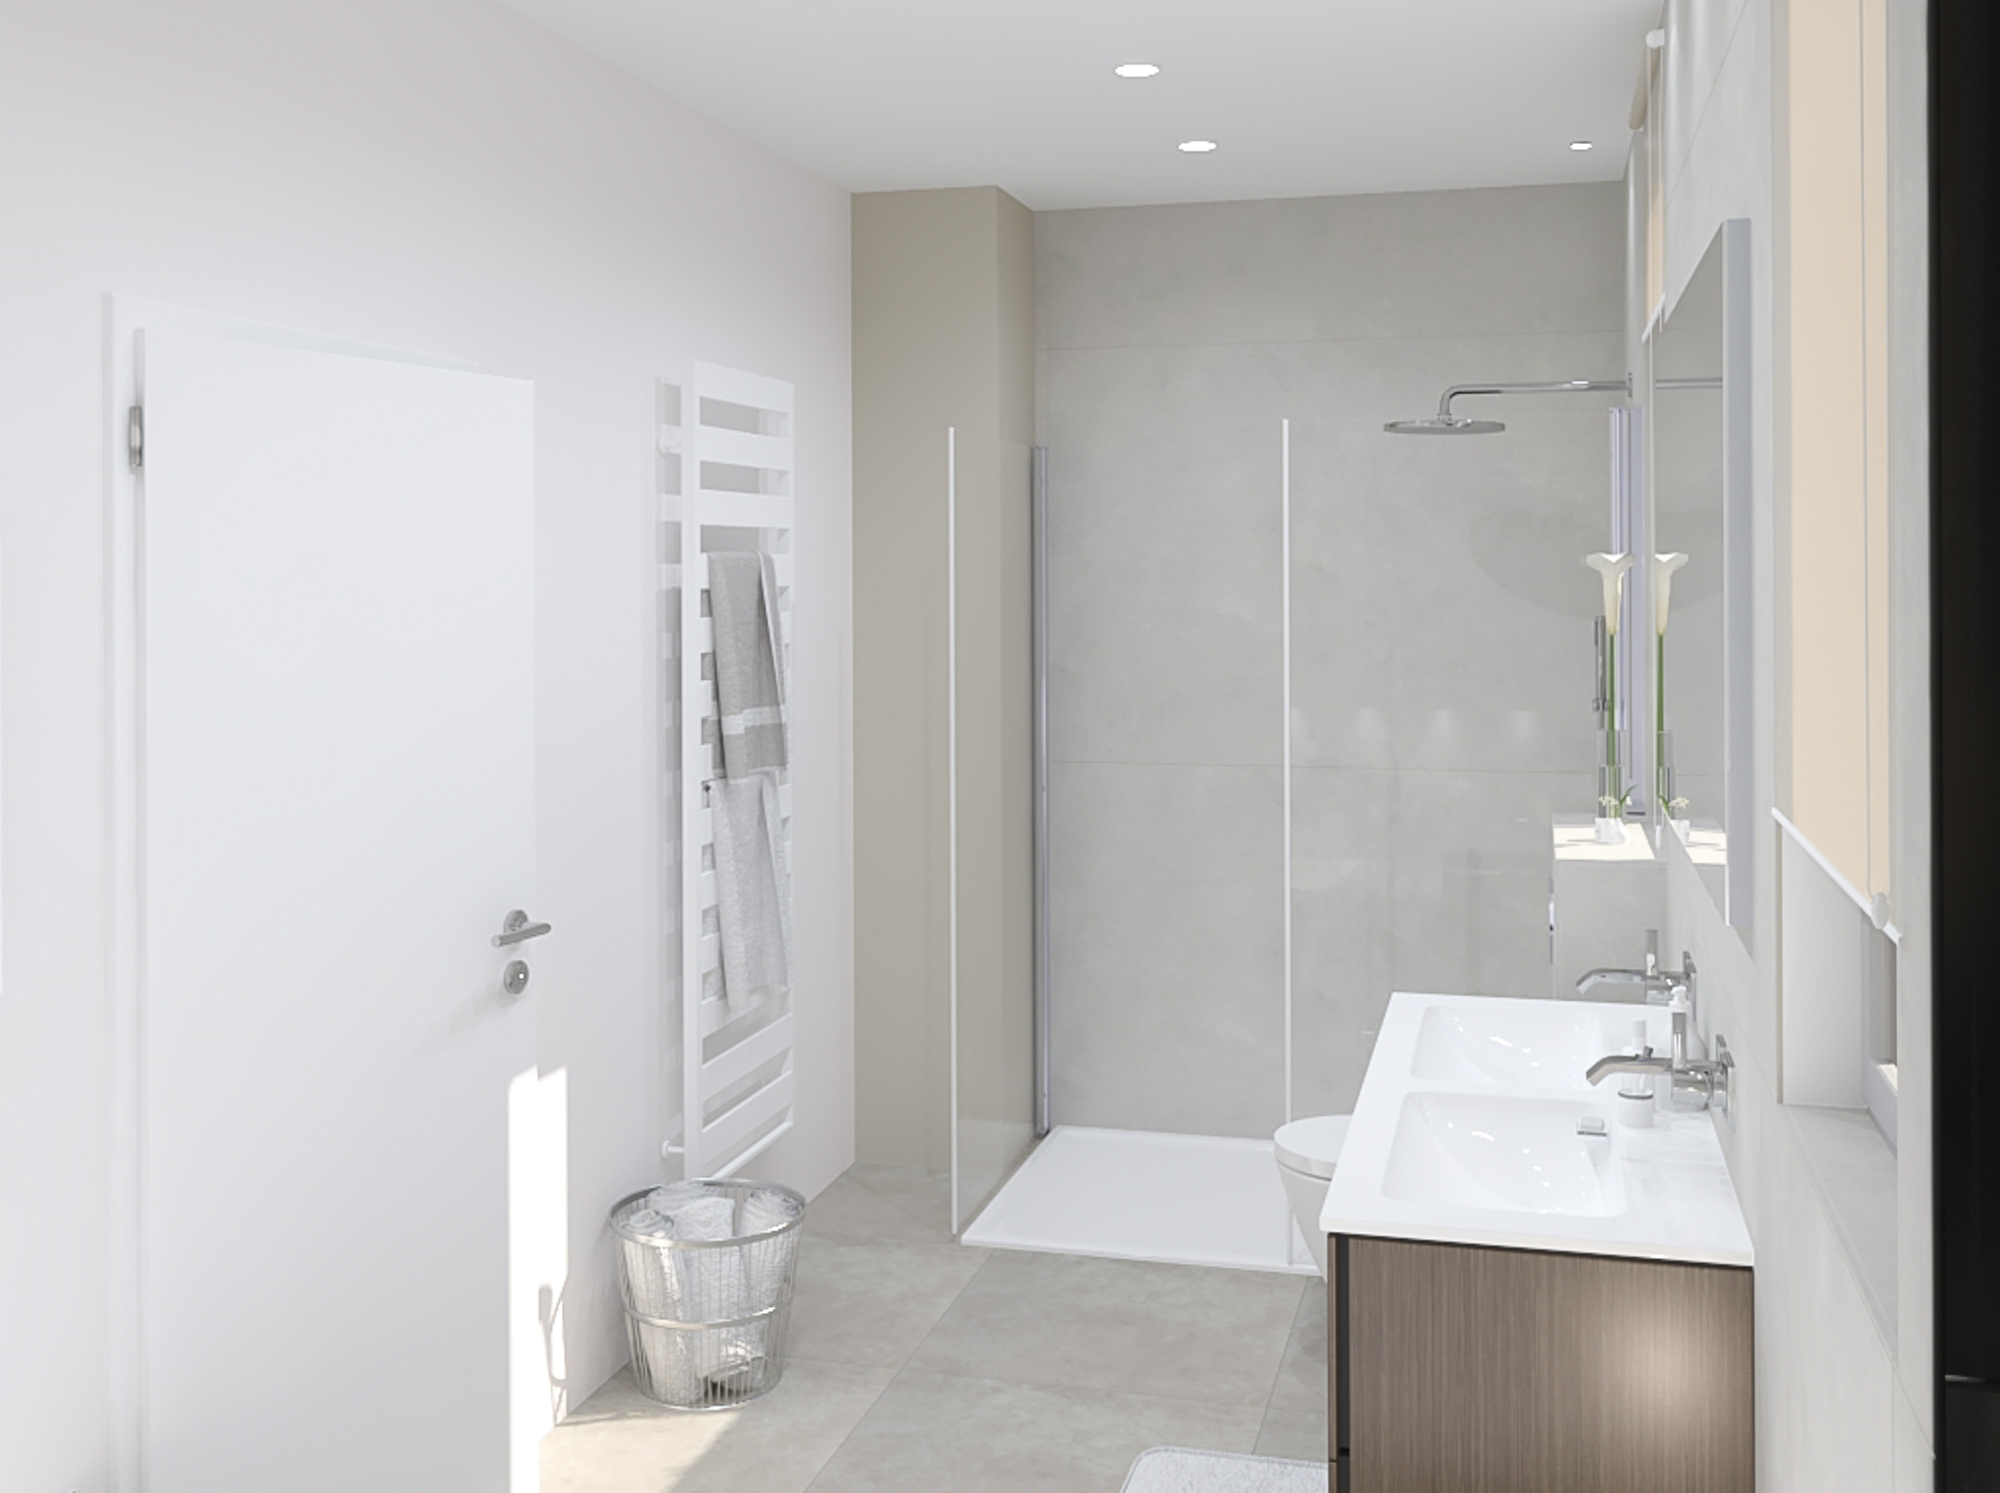 Badezimmer mit Perspektive von der Badewanne aus und eingebautem Deckenlicht